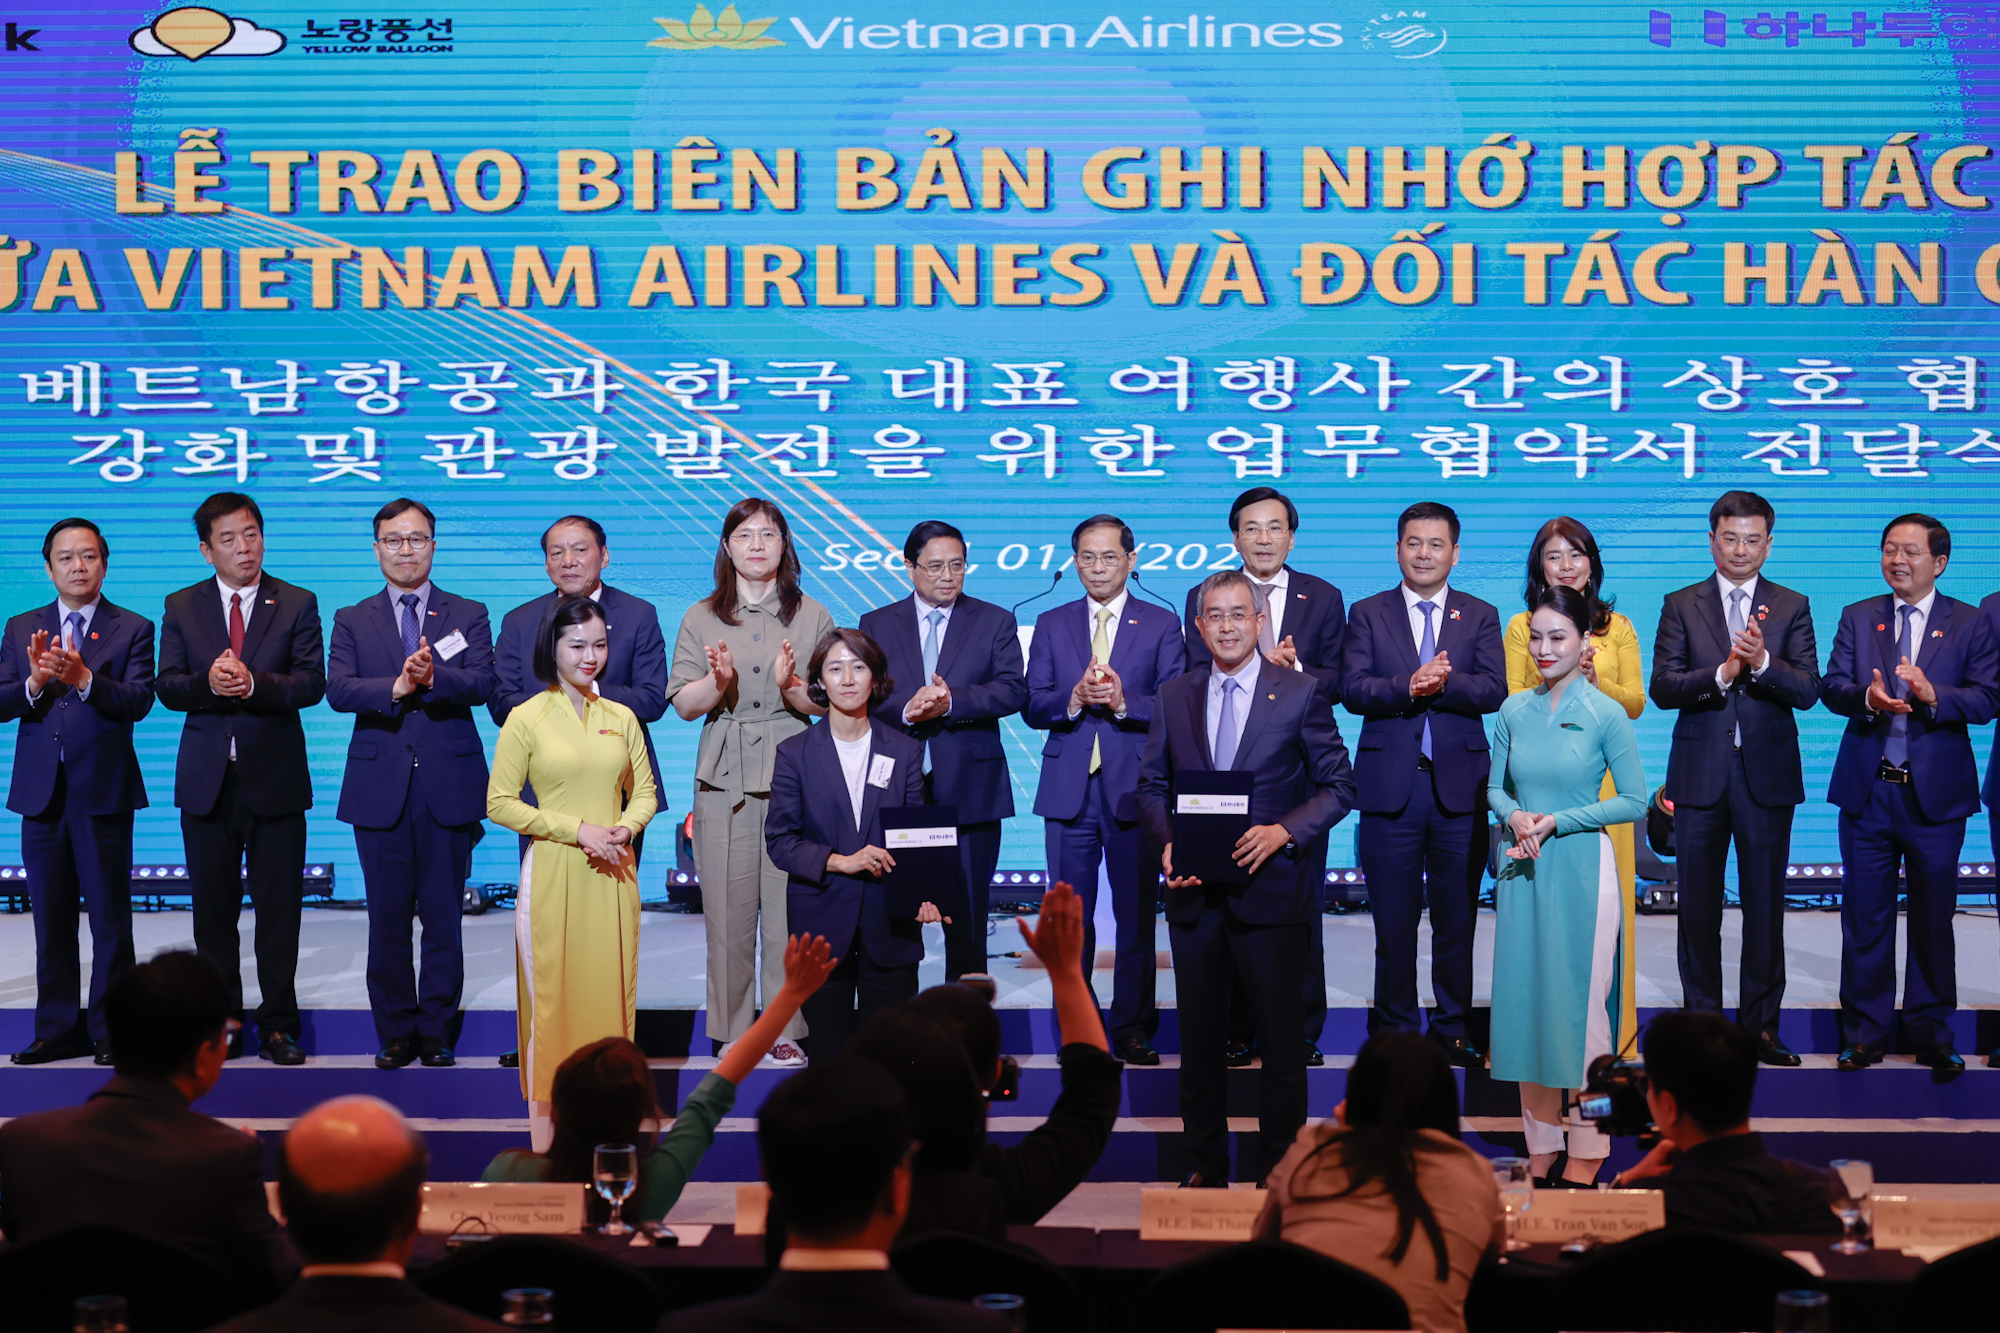 Thủ tướng chứng kiến Lễ trao Biên bản ghi nhớ hợp tác giữa Vietnam Airlines và đối tác Hàn Quốc - Ảnh: VGP/Nhật Bắc